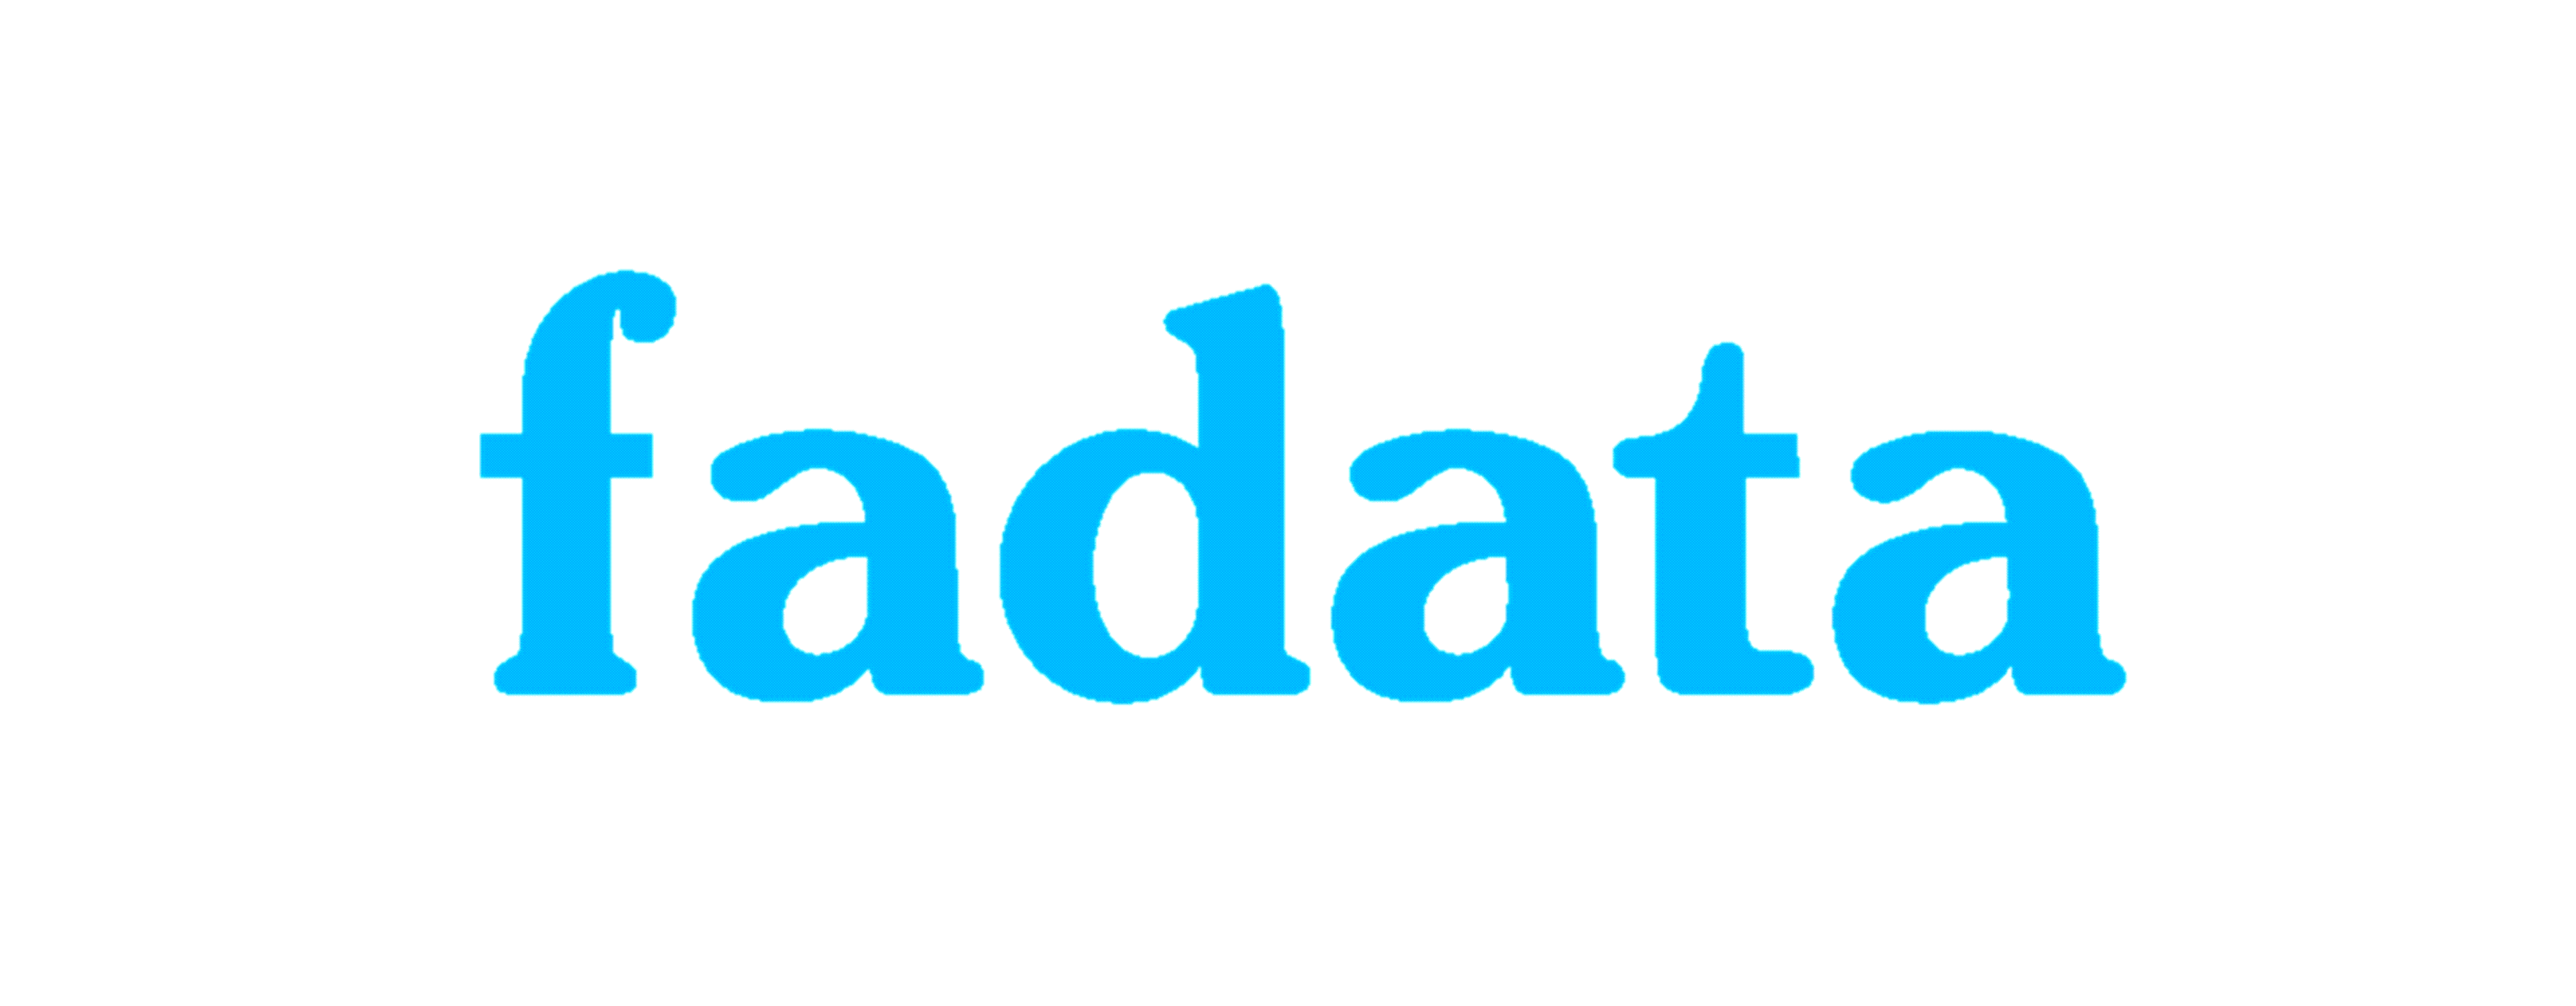             Logo Fadata        